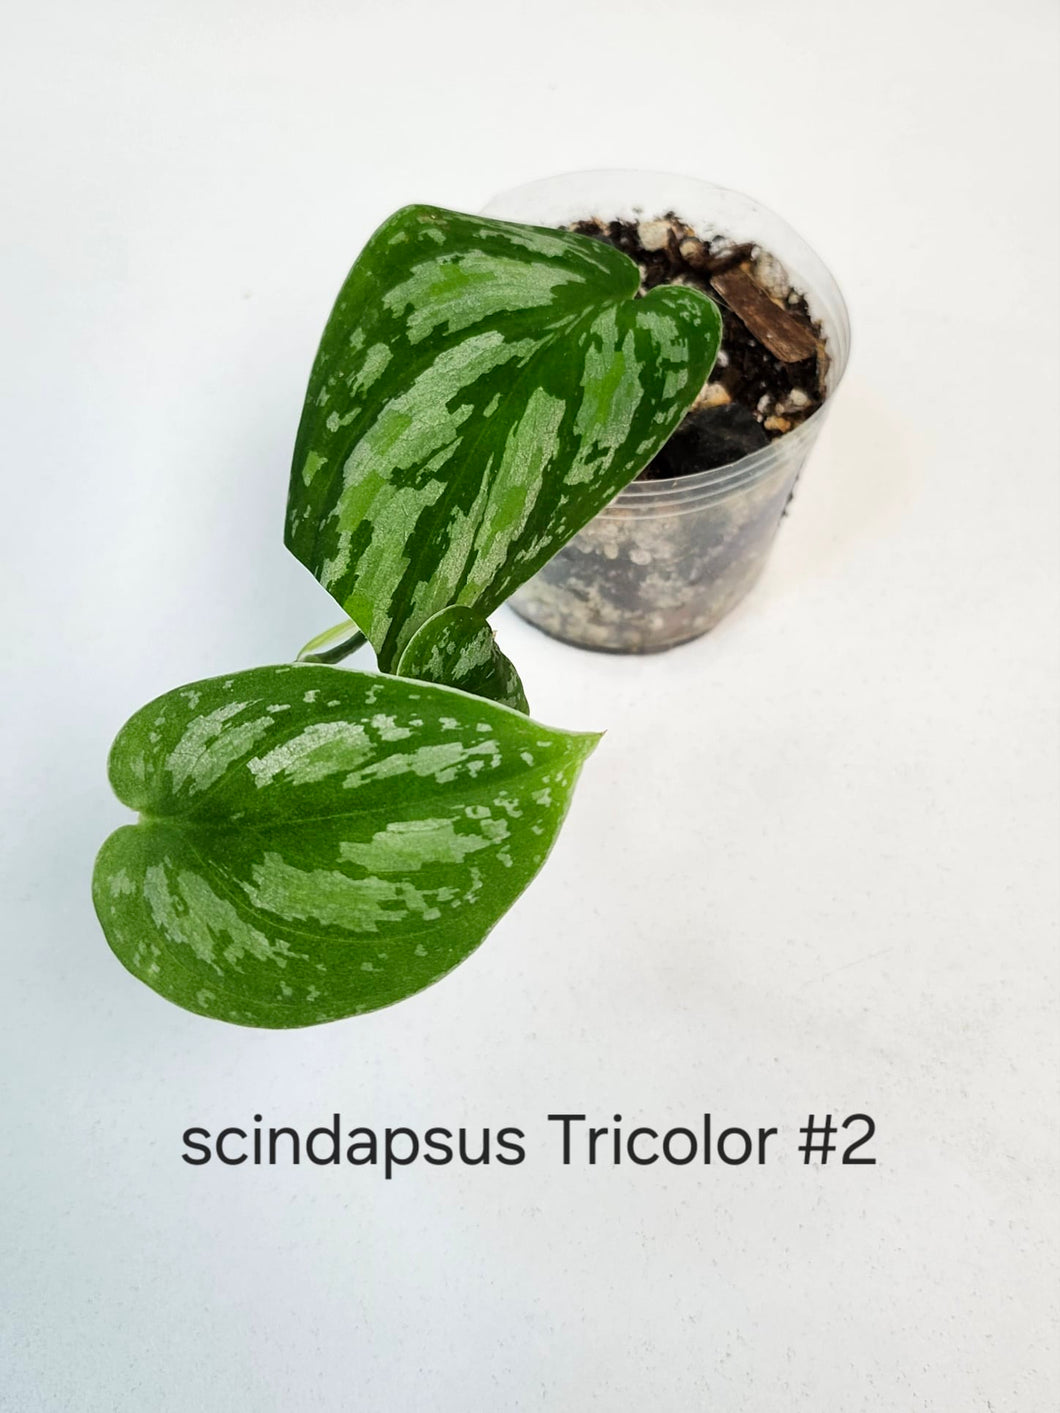 Scindapsus tricolor # 2